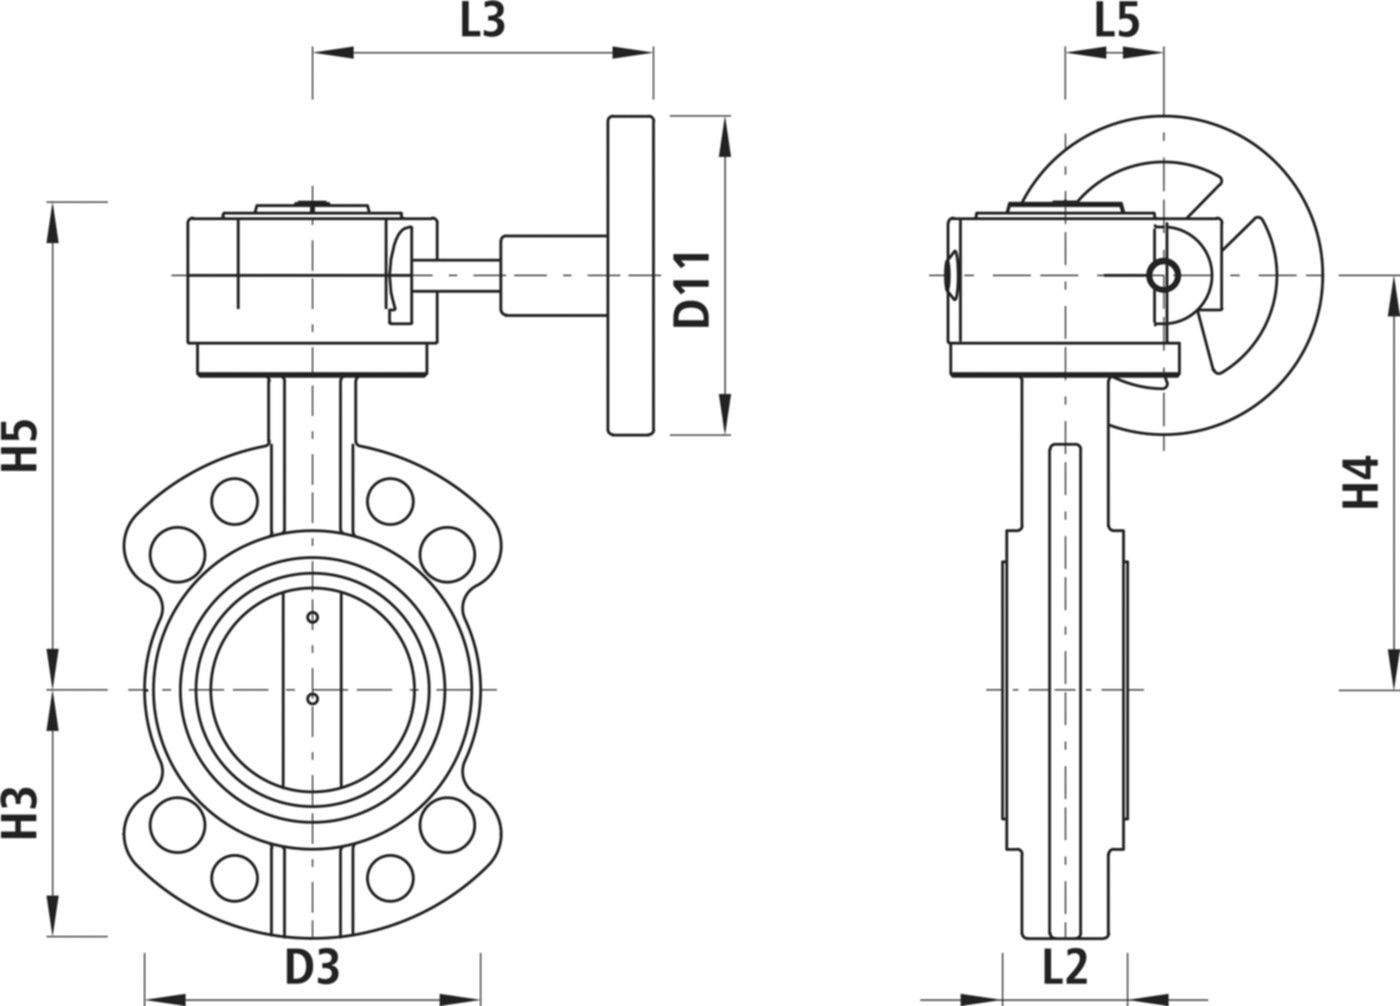 Absperrklappe mit Getriebe Typ AW 9941 DN 150 PN 16 - Hawle Absperrklappen